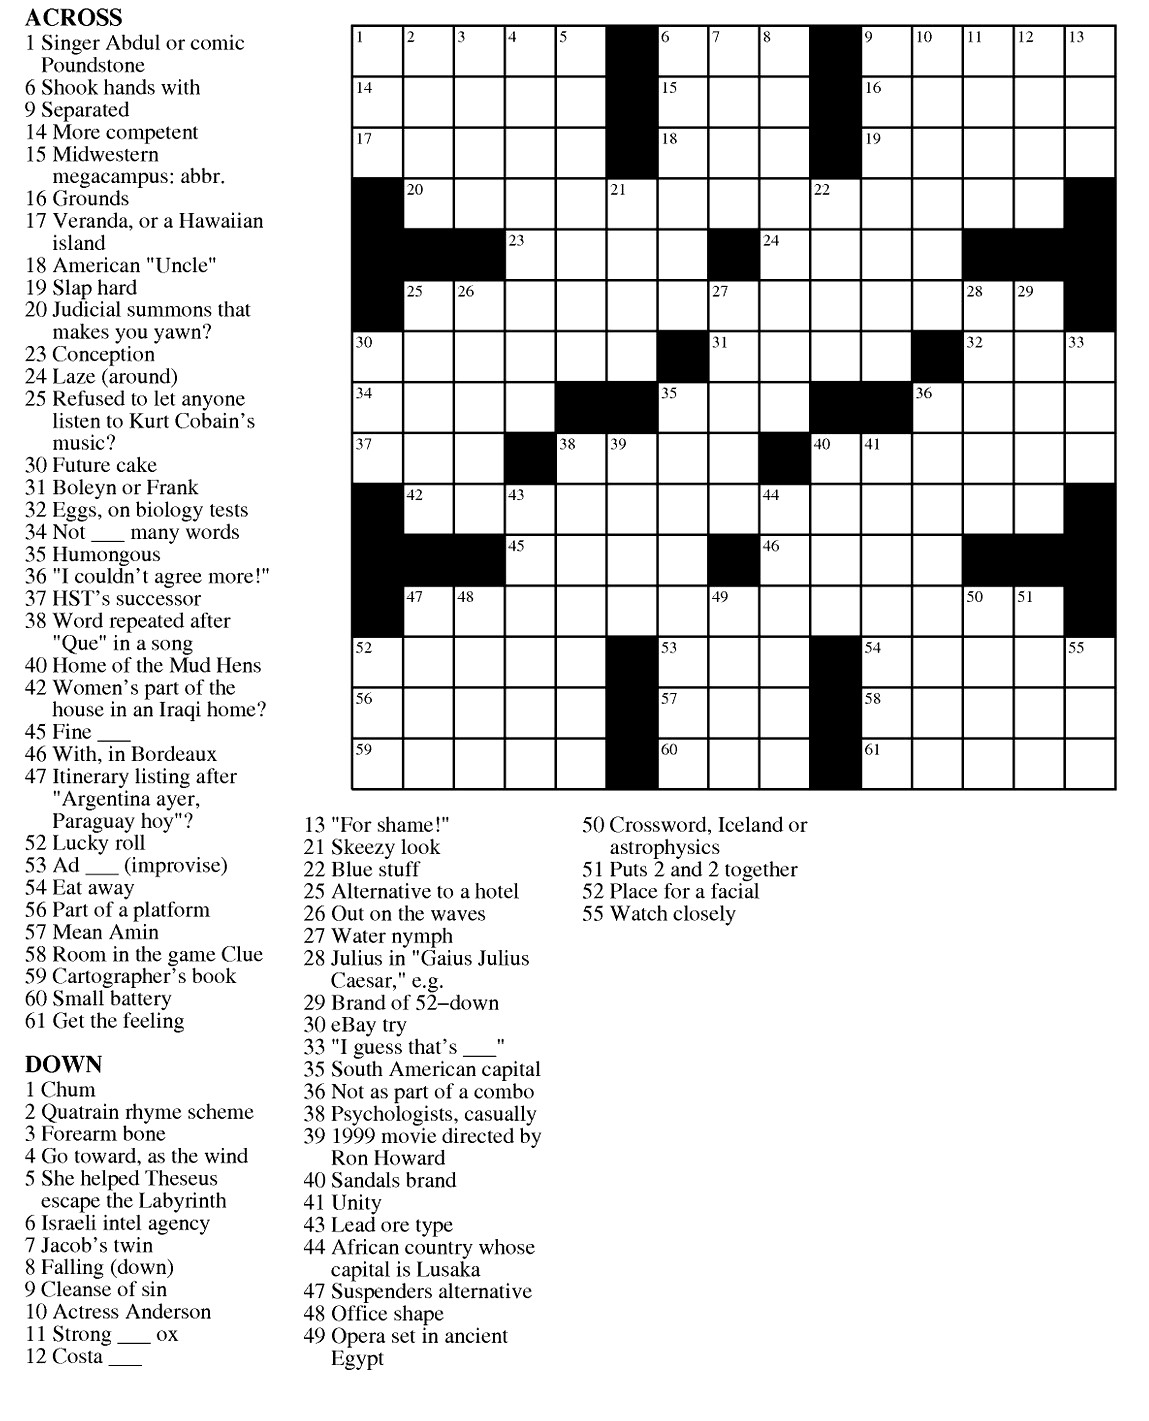 Free Crossword Puzzle Printable